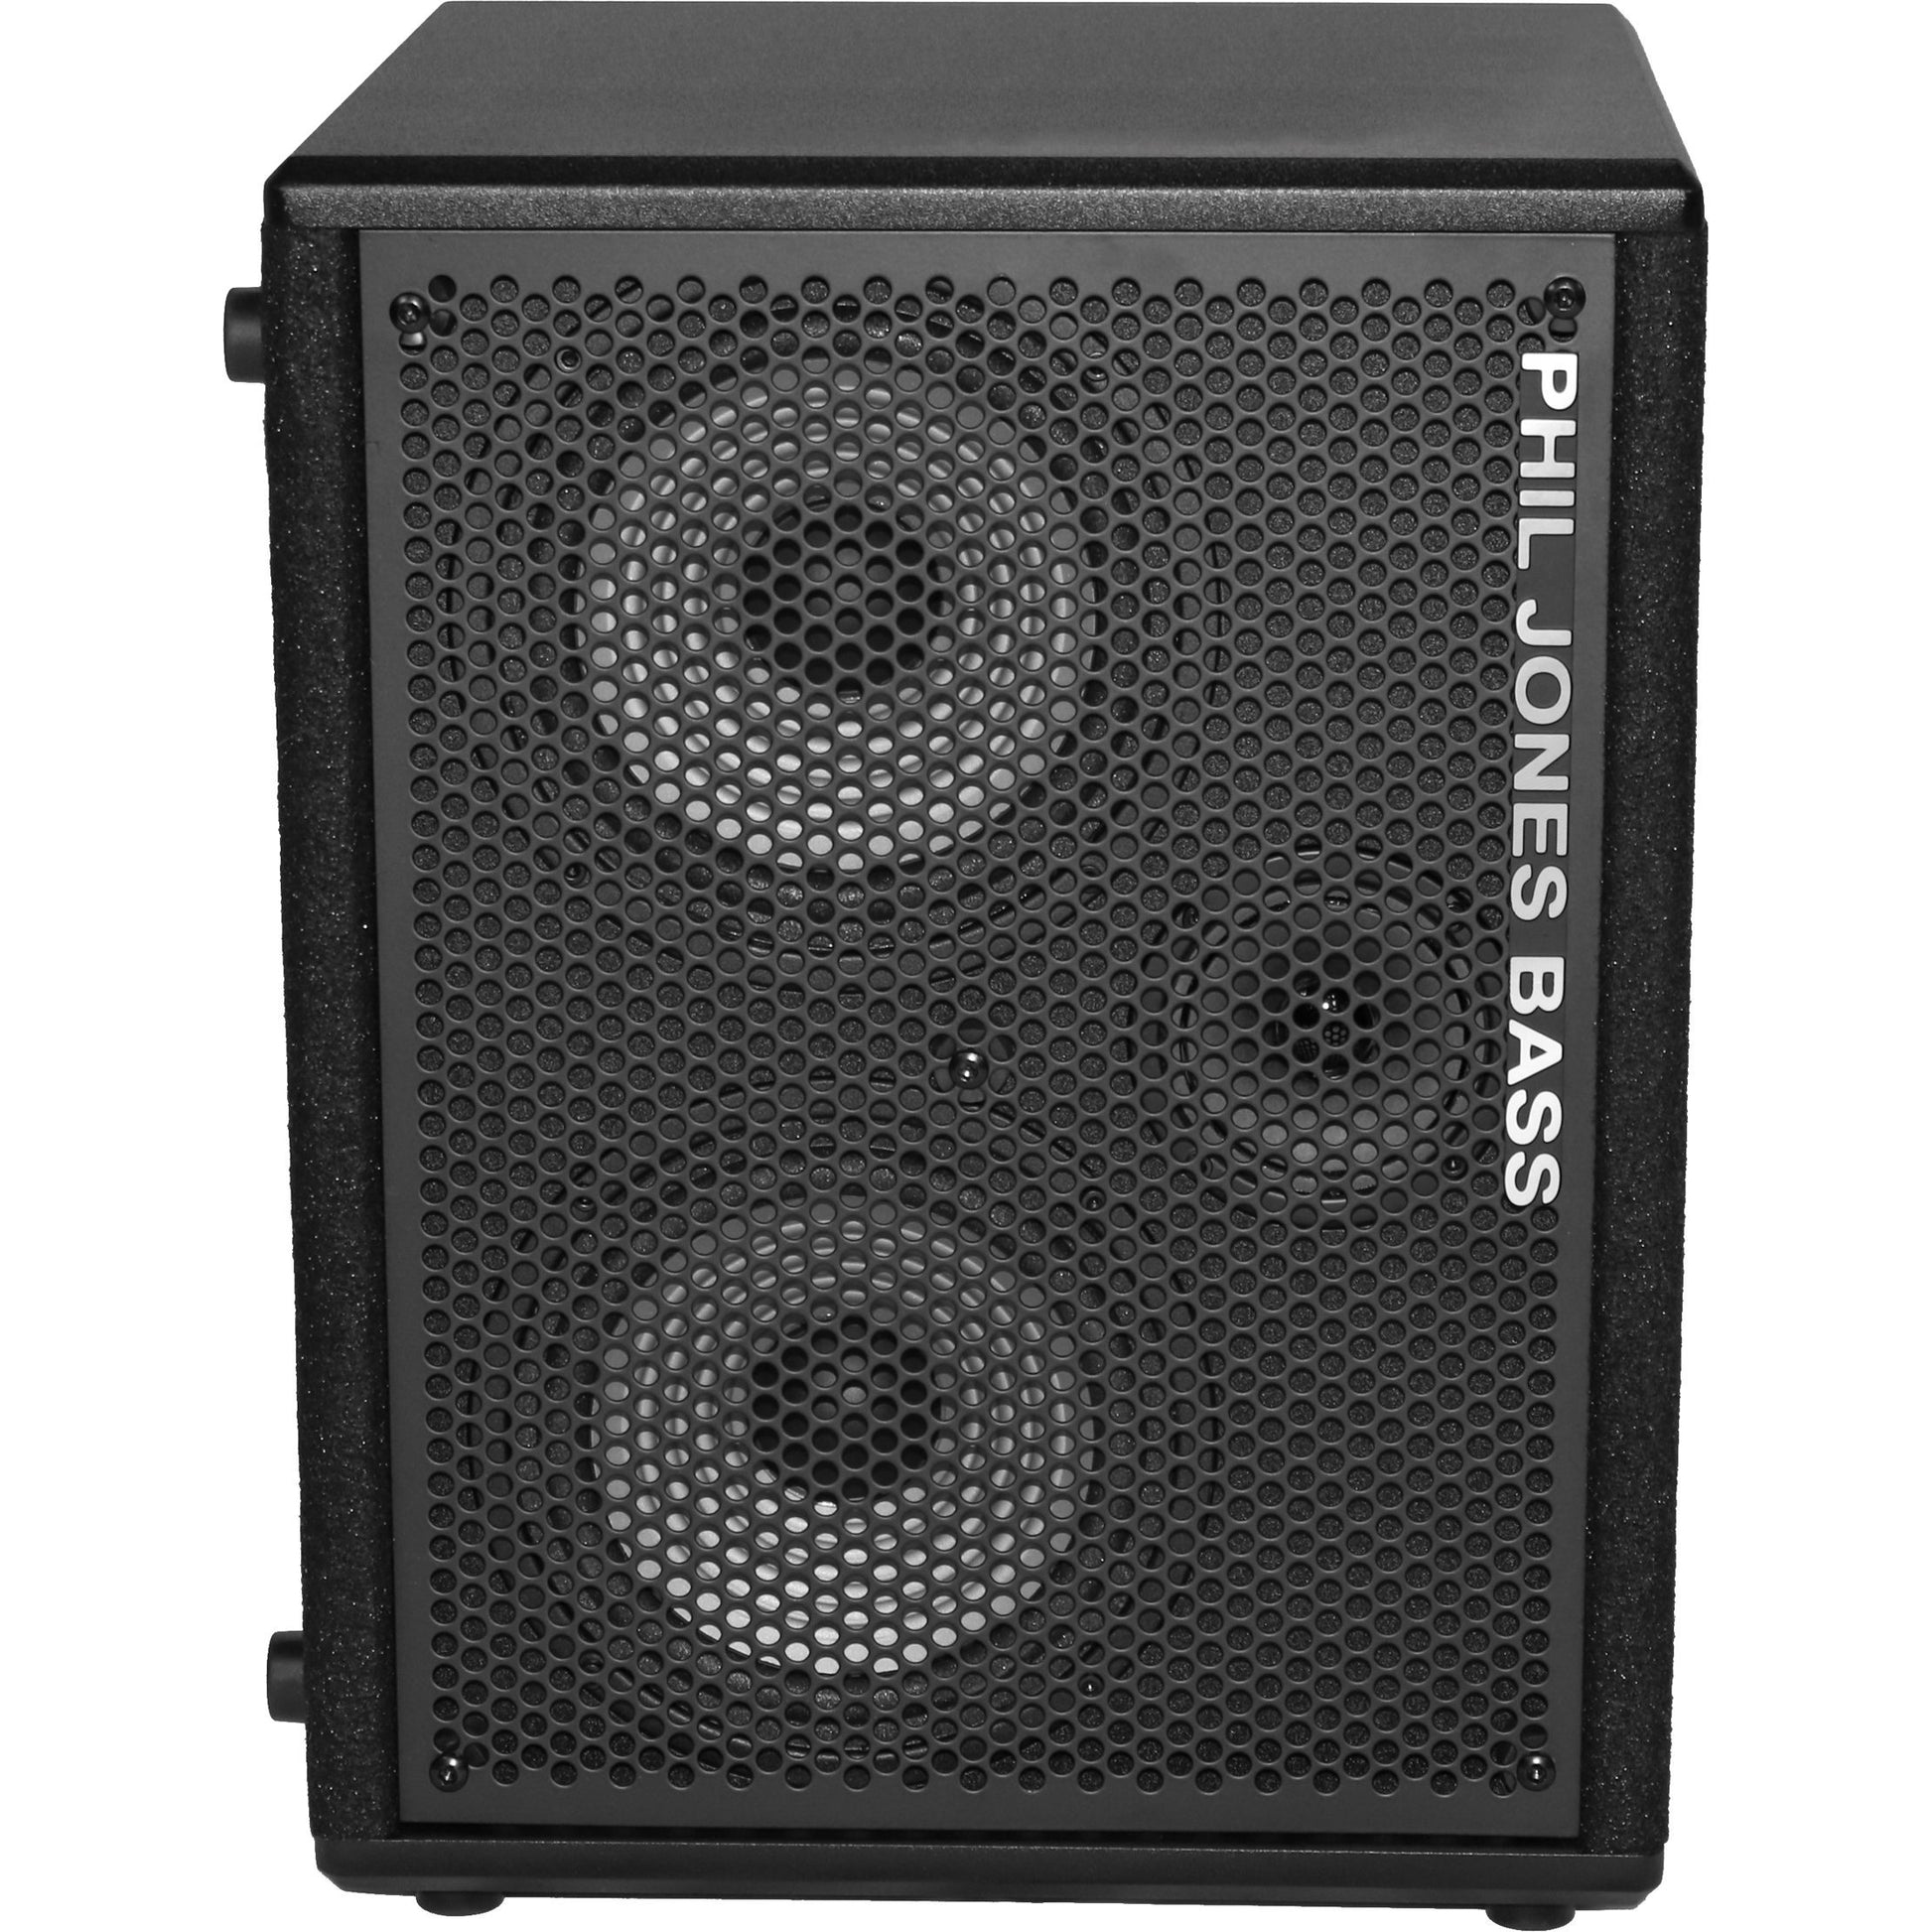 Phil Jones Bass Cab-27 Compact Bass Speaker Cabinet